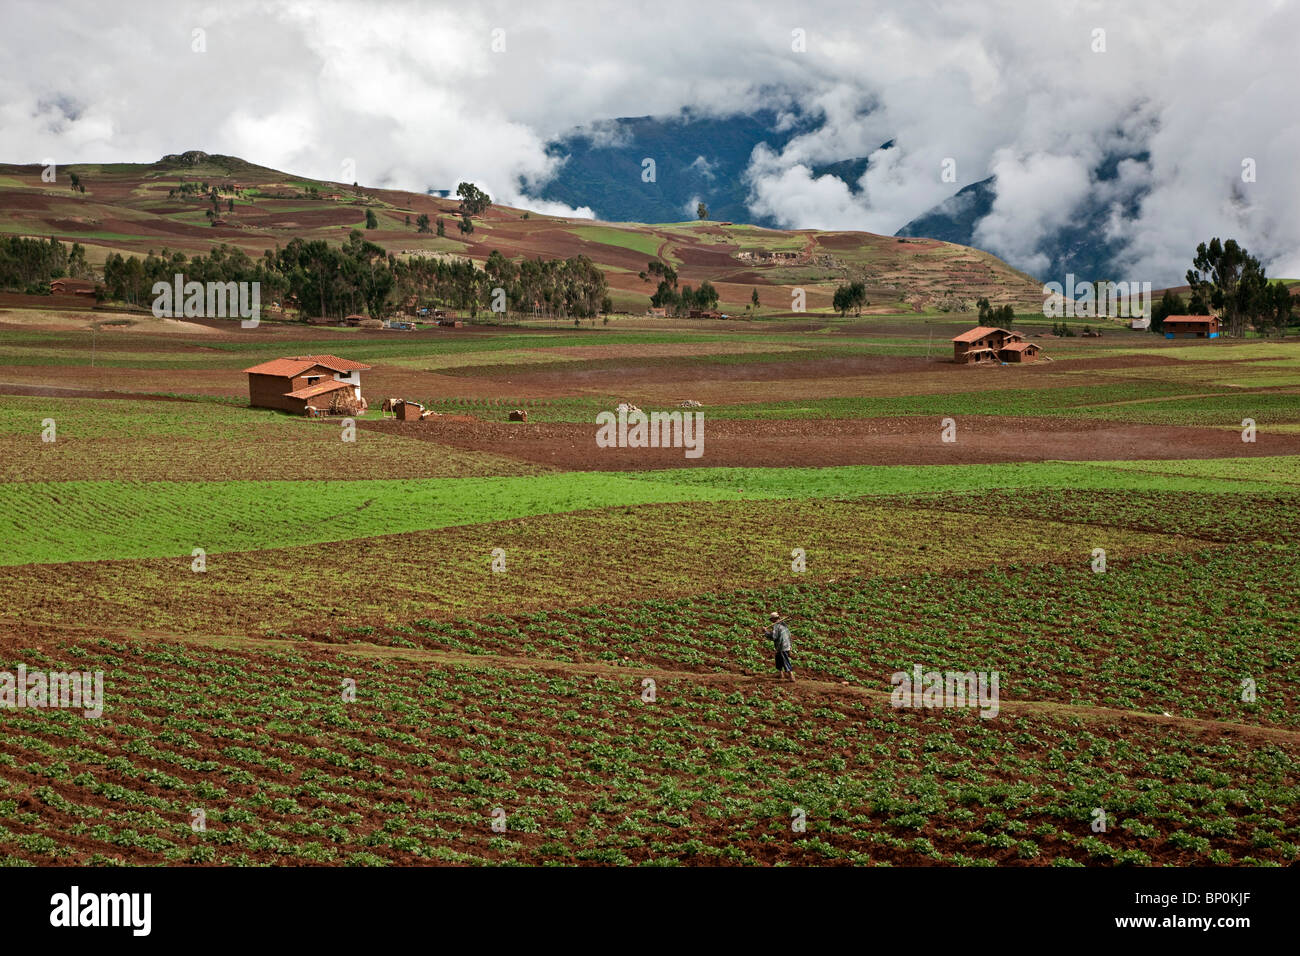 Le Pérou, un homme traverse les champs fertiles de cultures dans la riche région agricole de la vallée de l'Urubamba. Banque D'Images